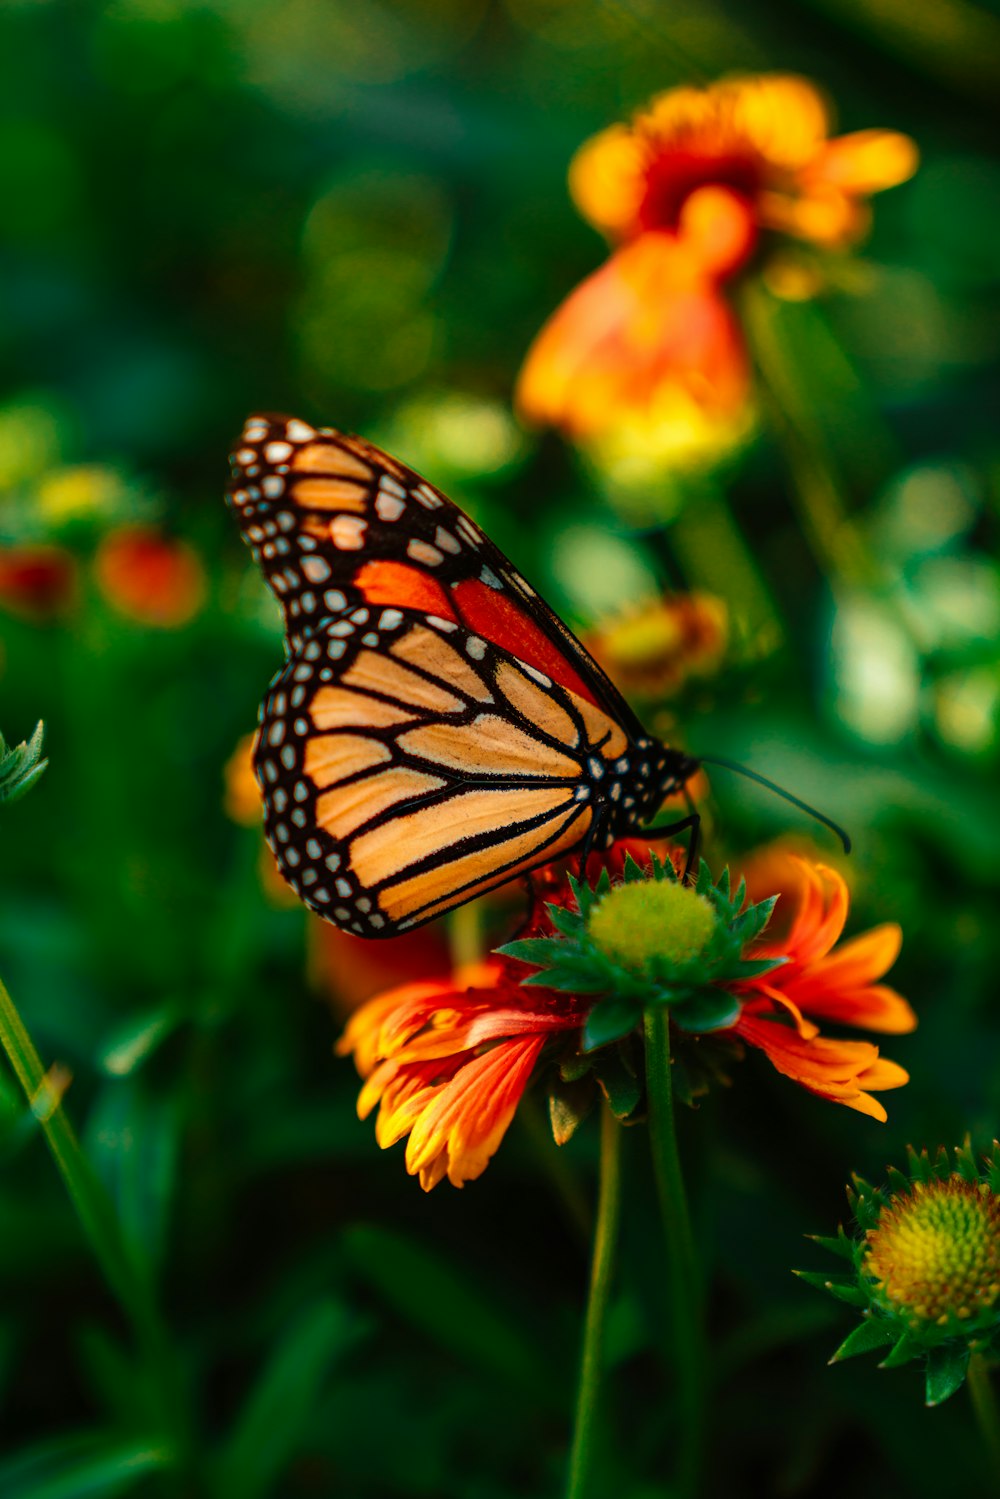 borboleta laranja e preta nas flores